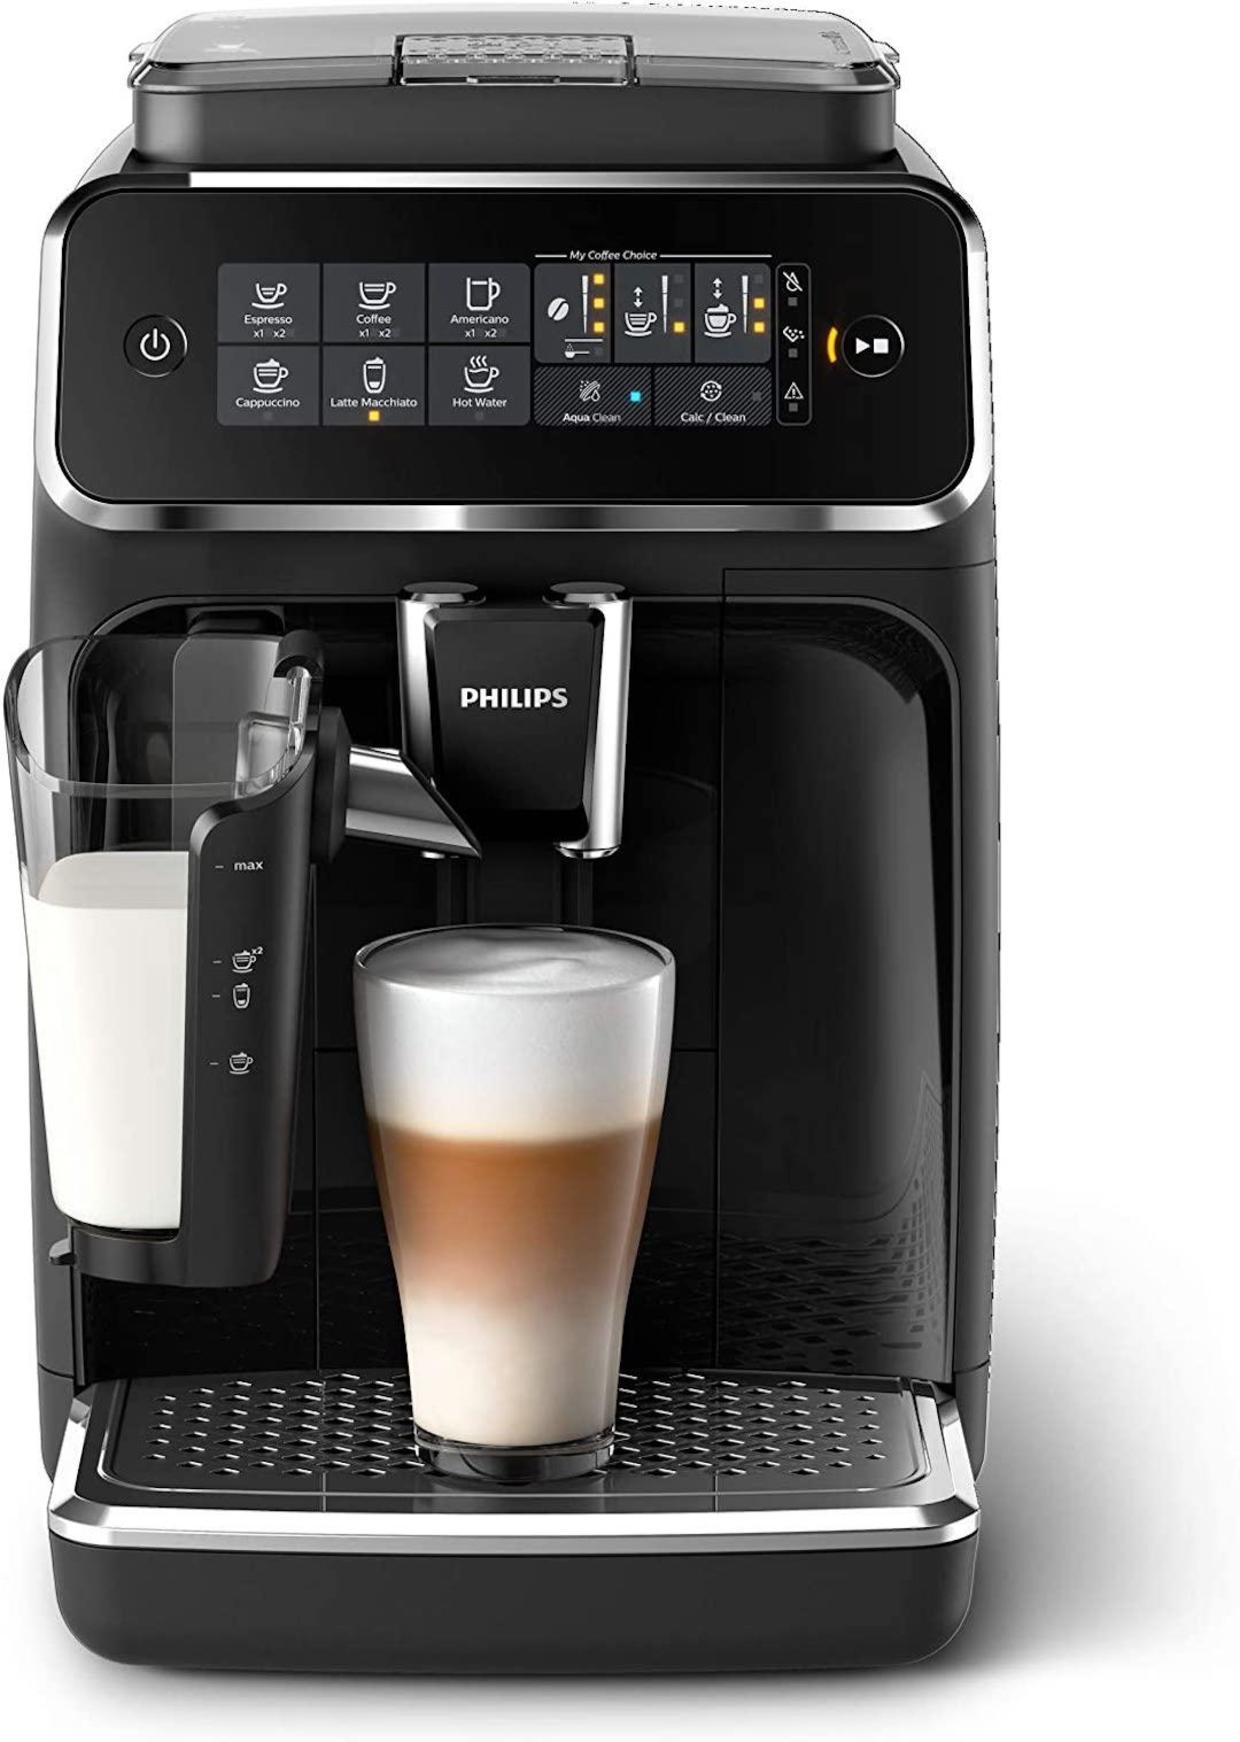 Philips 3200 series espresso machine and latte maker